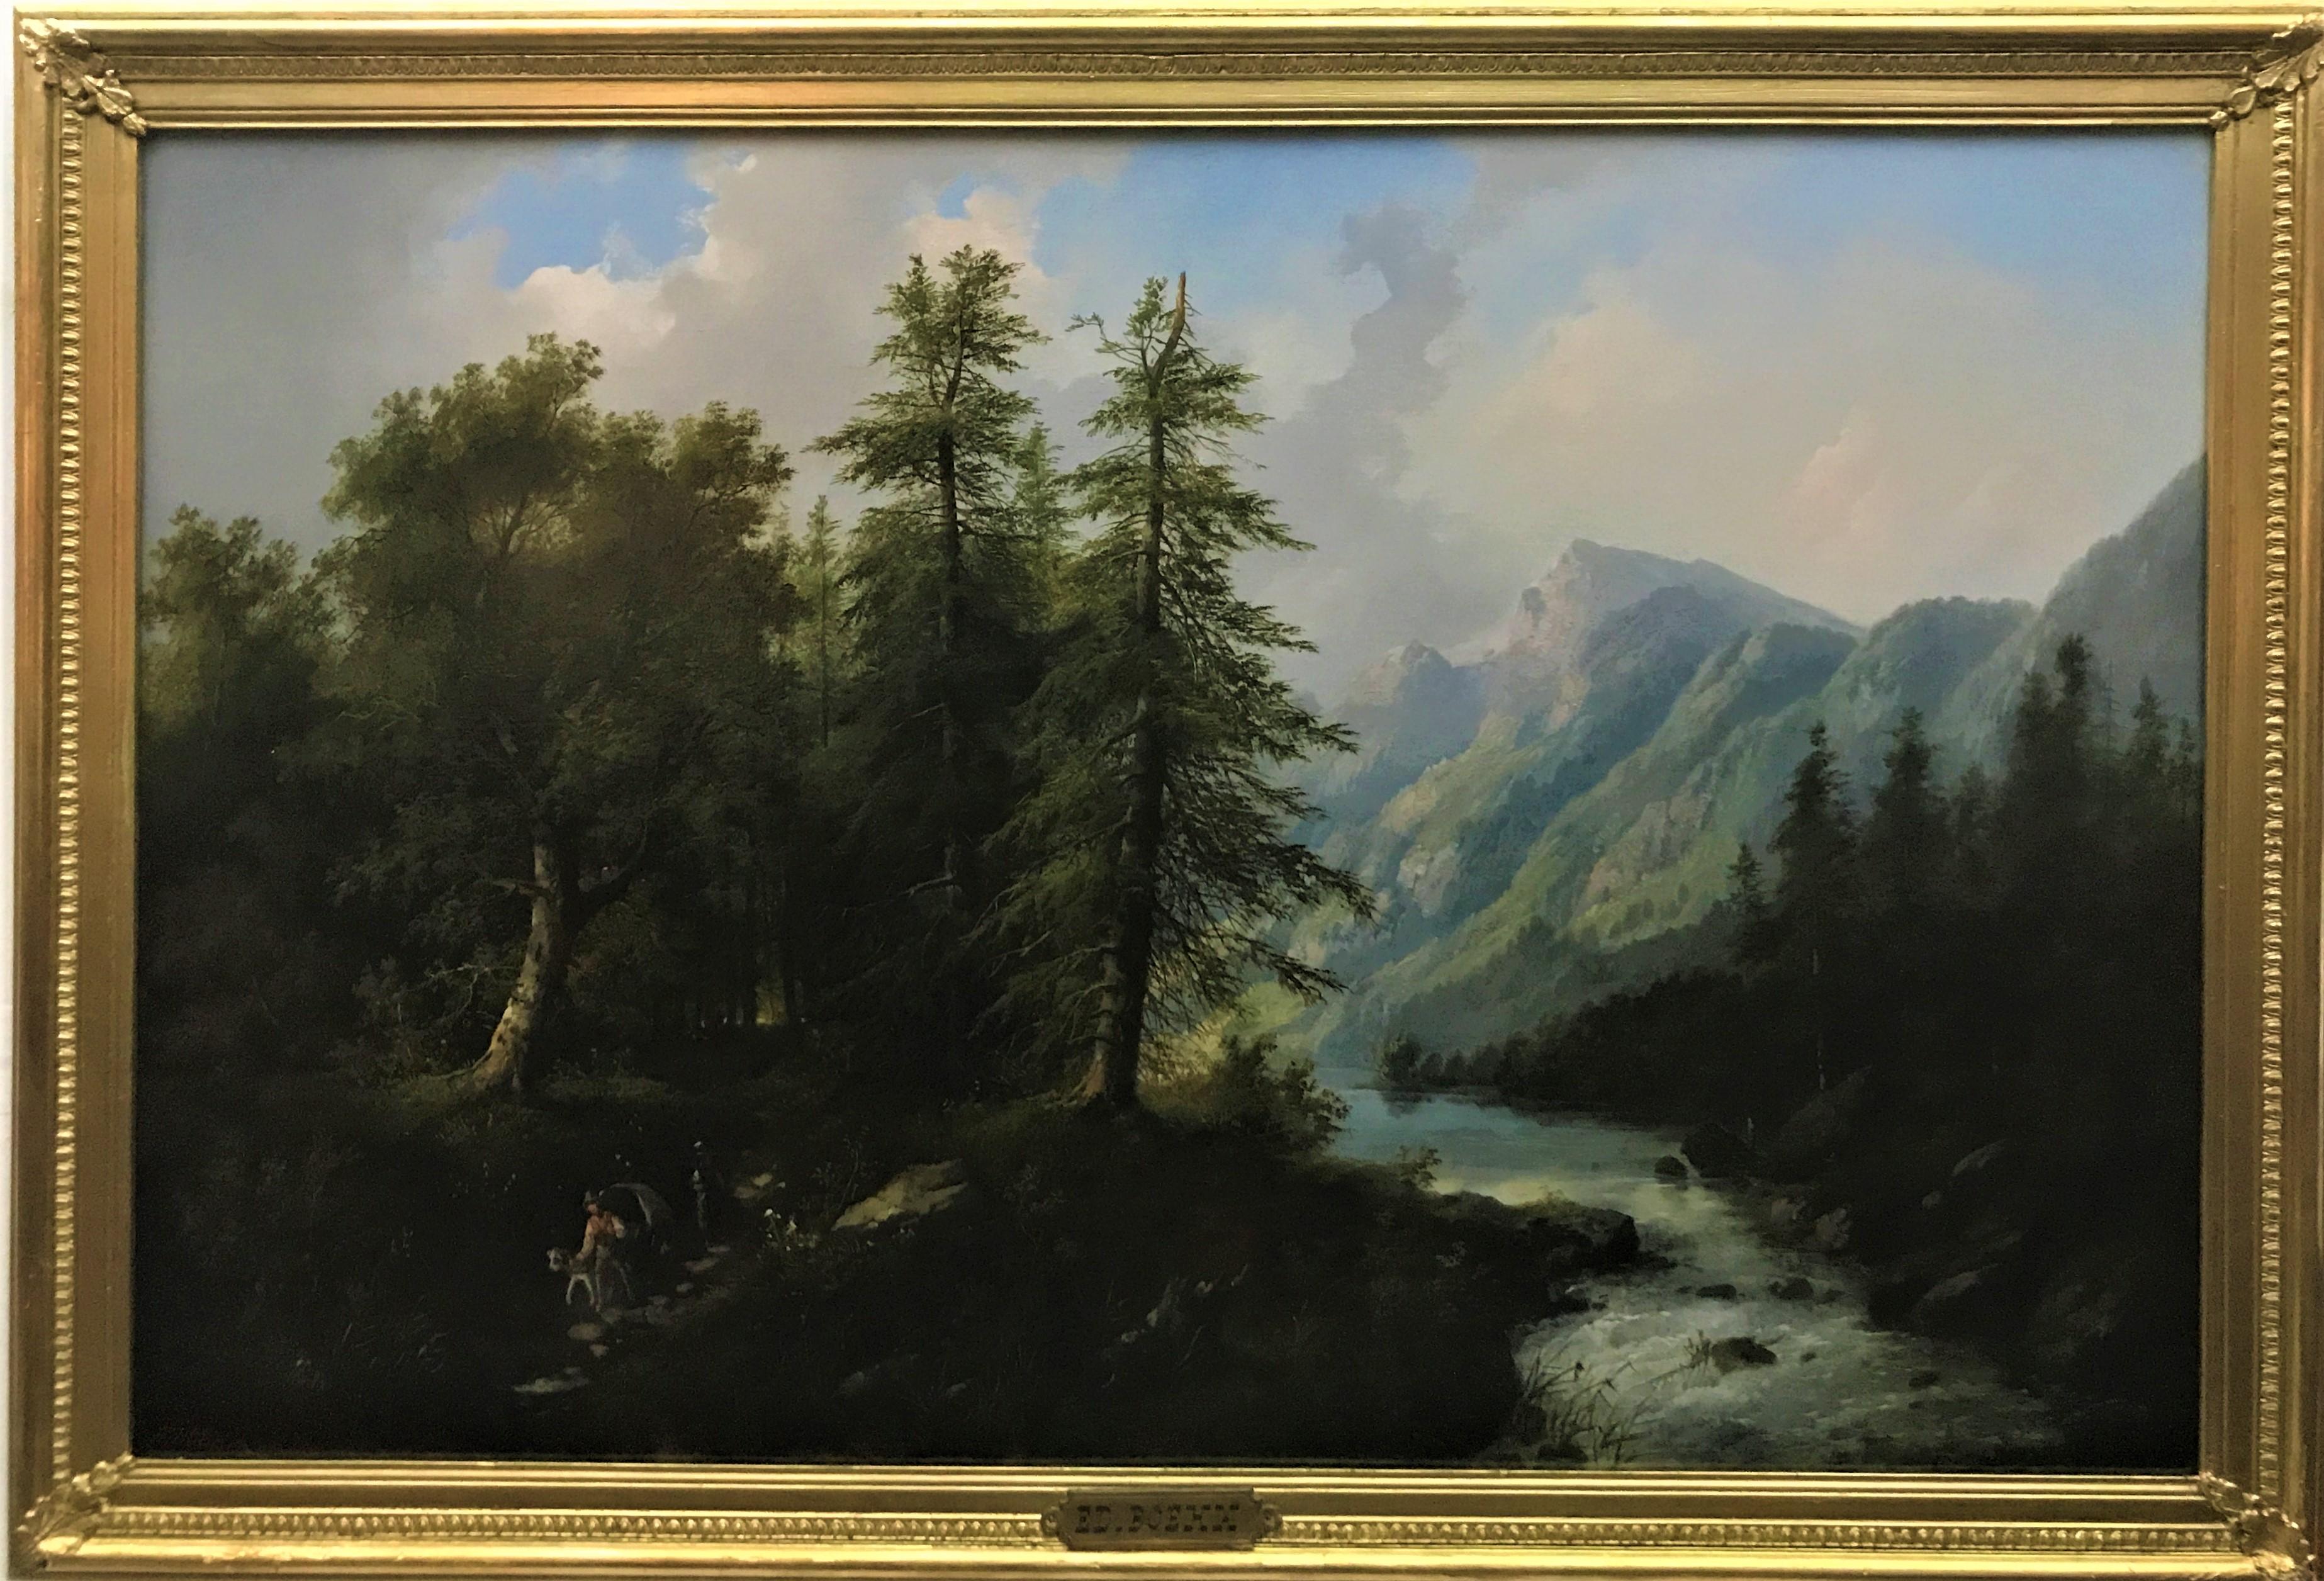 Paysage suisse, huile sur toile originale, vers 1870, peintre réaliste autrichien - Painting de Eduard Boehm